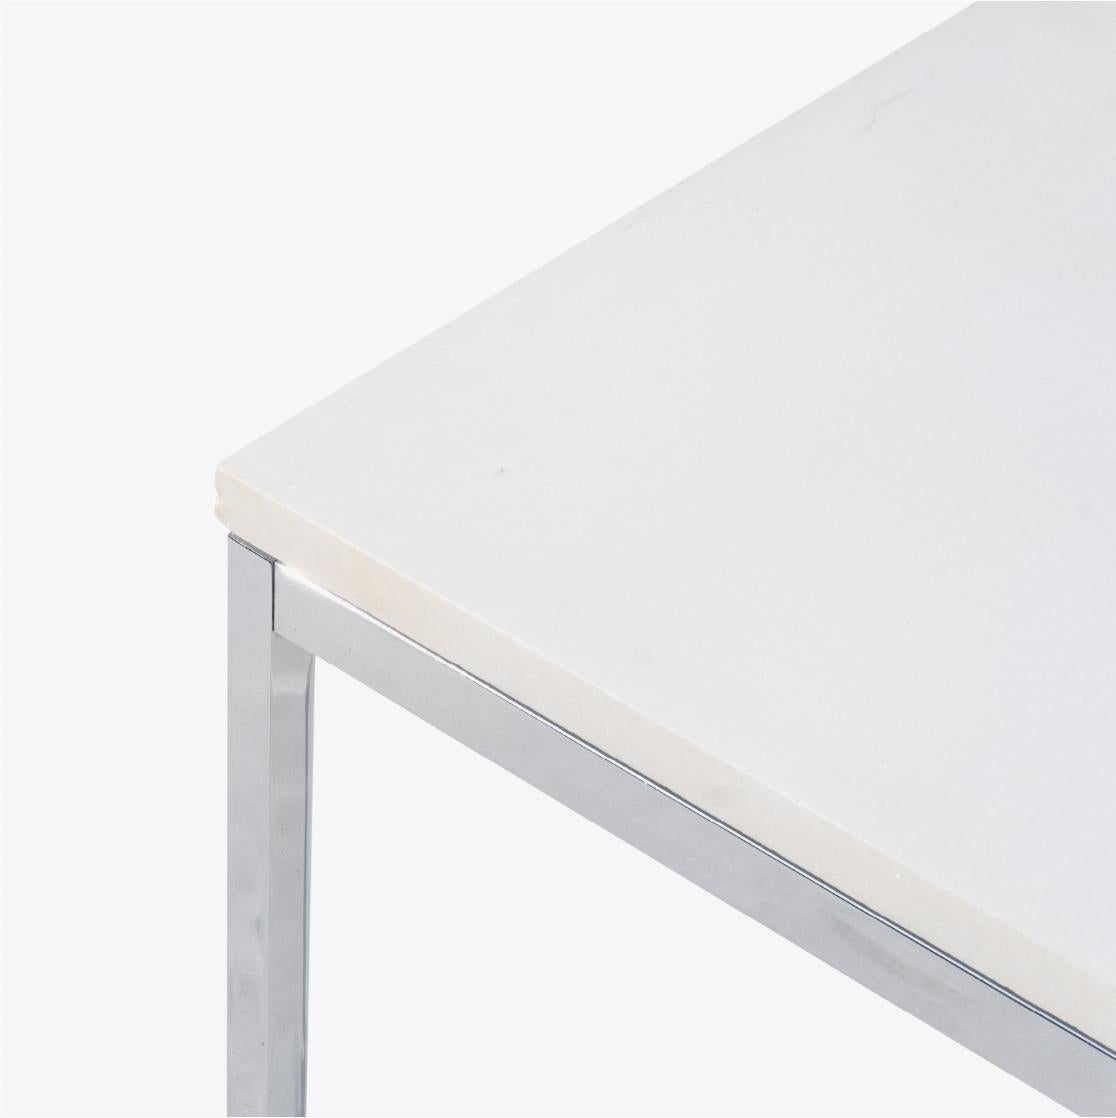 La table basse Florence Knoll, un élément de base du design, est présentée ici. Cette table a un beau plateau en pierre blanche avec un soupçon de veines gris clair. L'association de l'acier inoxydable poli et de la pierre blanche étant des plus